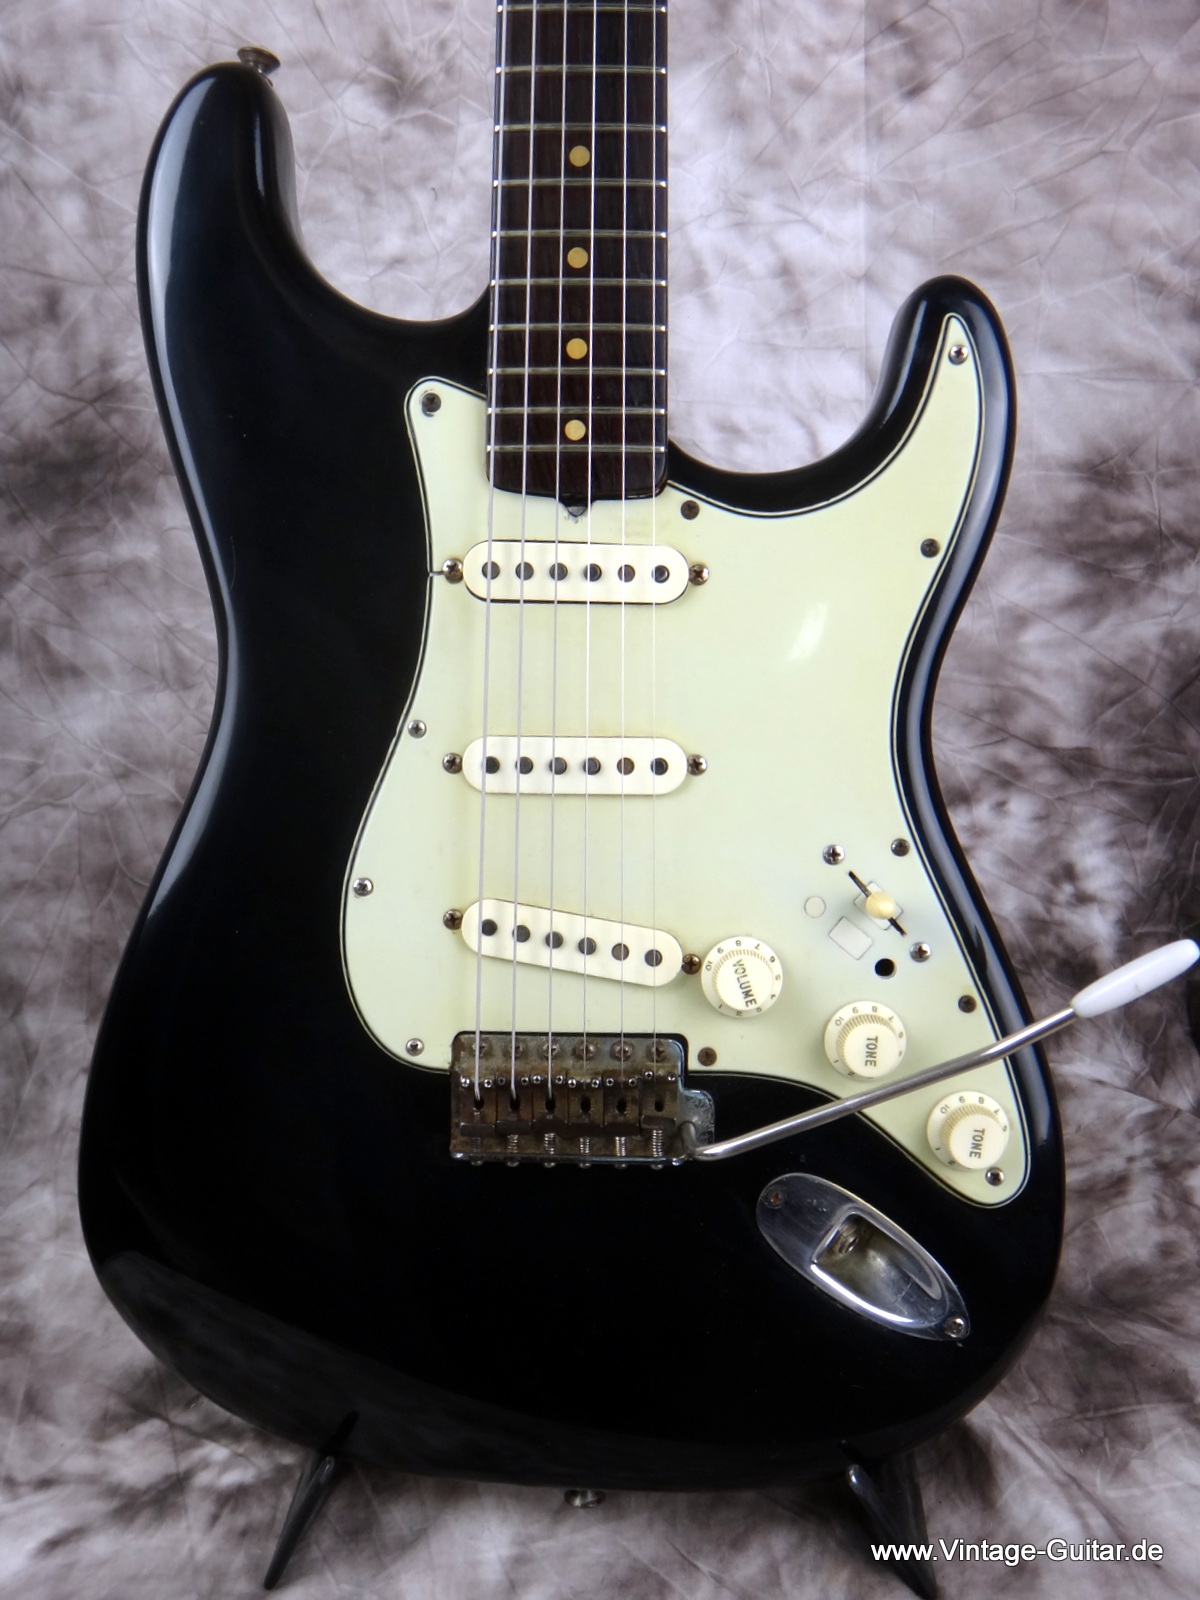 Fender_Stratocaster-black_refinish-1964-002.JPG